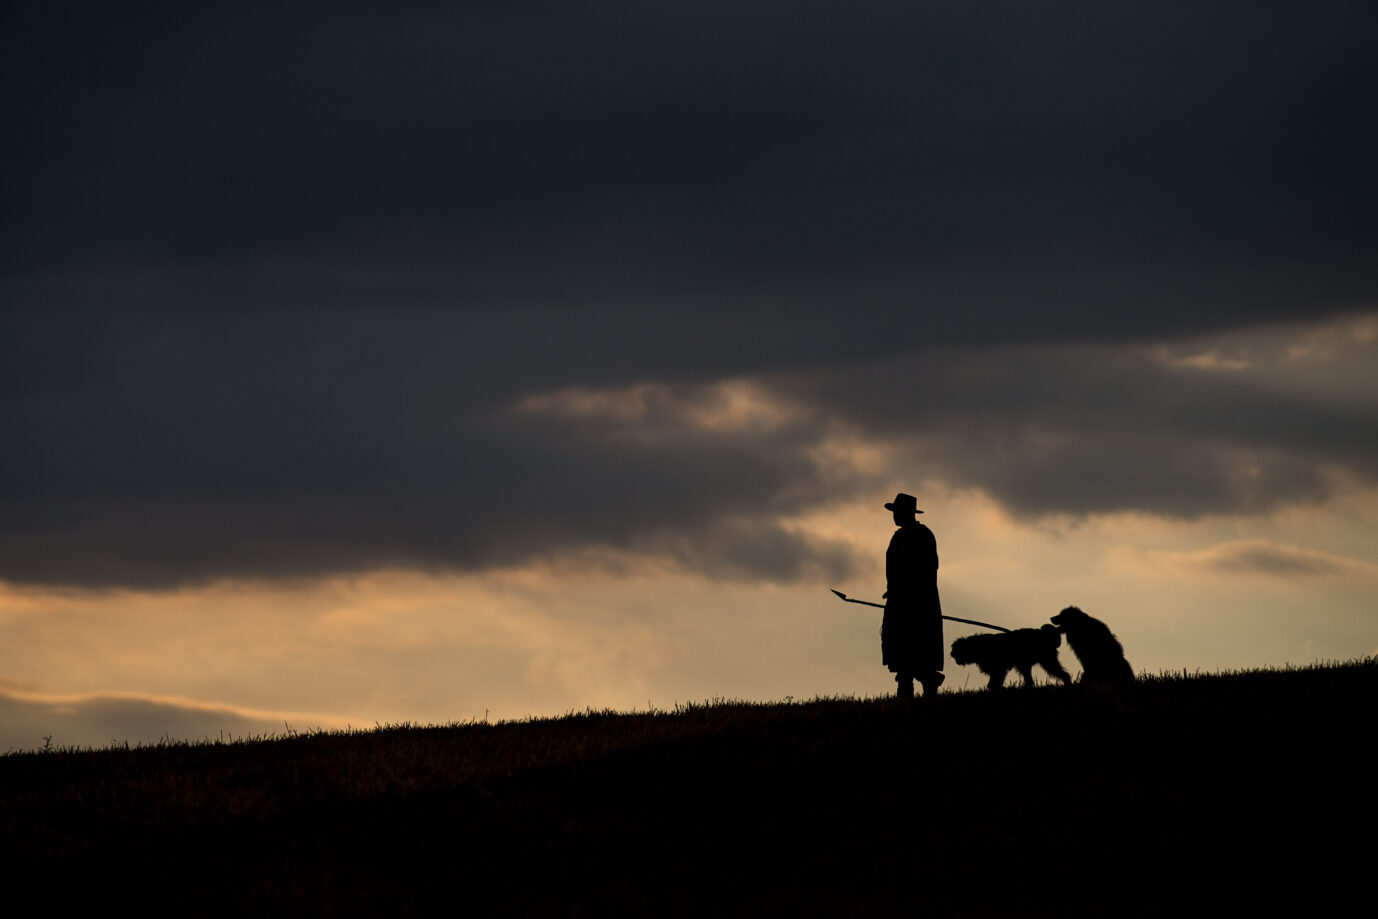 Ein Schäfer steht mit seinen Hirtehunden in einer Landschaft in Abenddämmerung. Symbolisch lässt sich dieses Bild mit den Opfergängen des Gesinnungsstaats verknüpfen. Wolf und Schaf spielten auch im Fall Loretta eine Rolle.